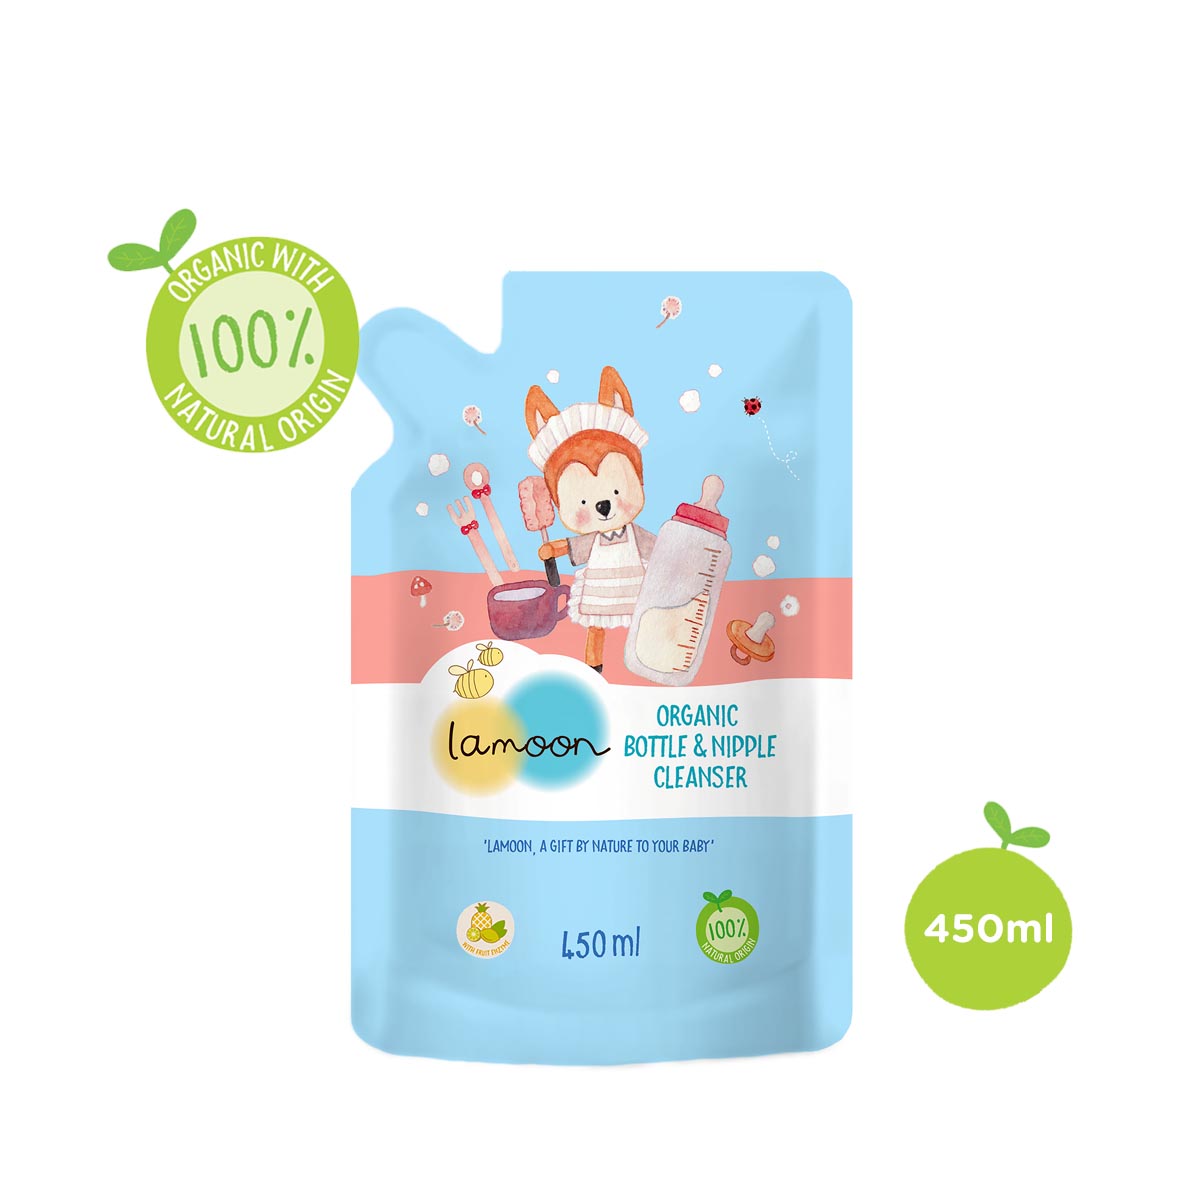 Nước rửa bình sữa Organic cho bé Lamoon - Túi 450ml